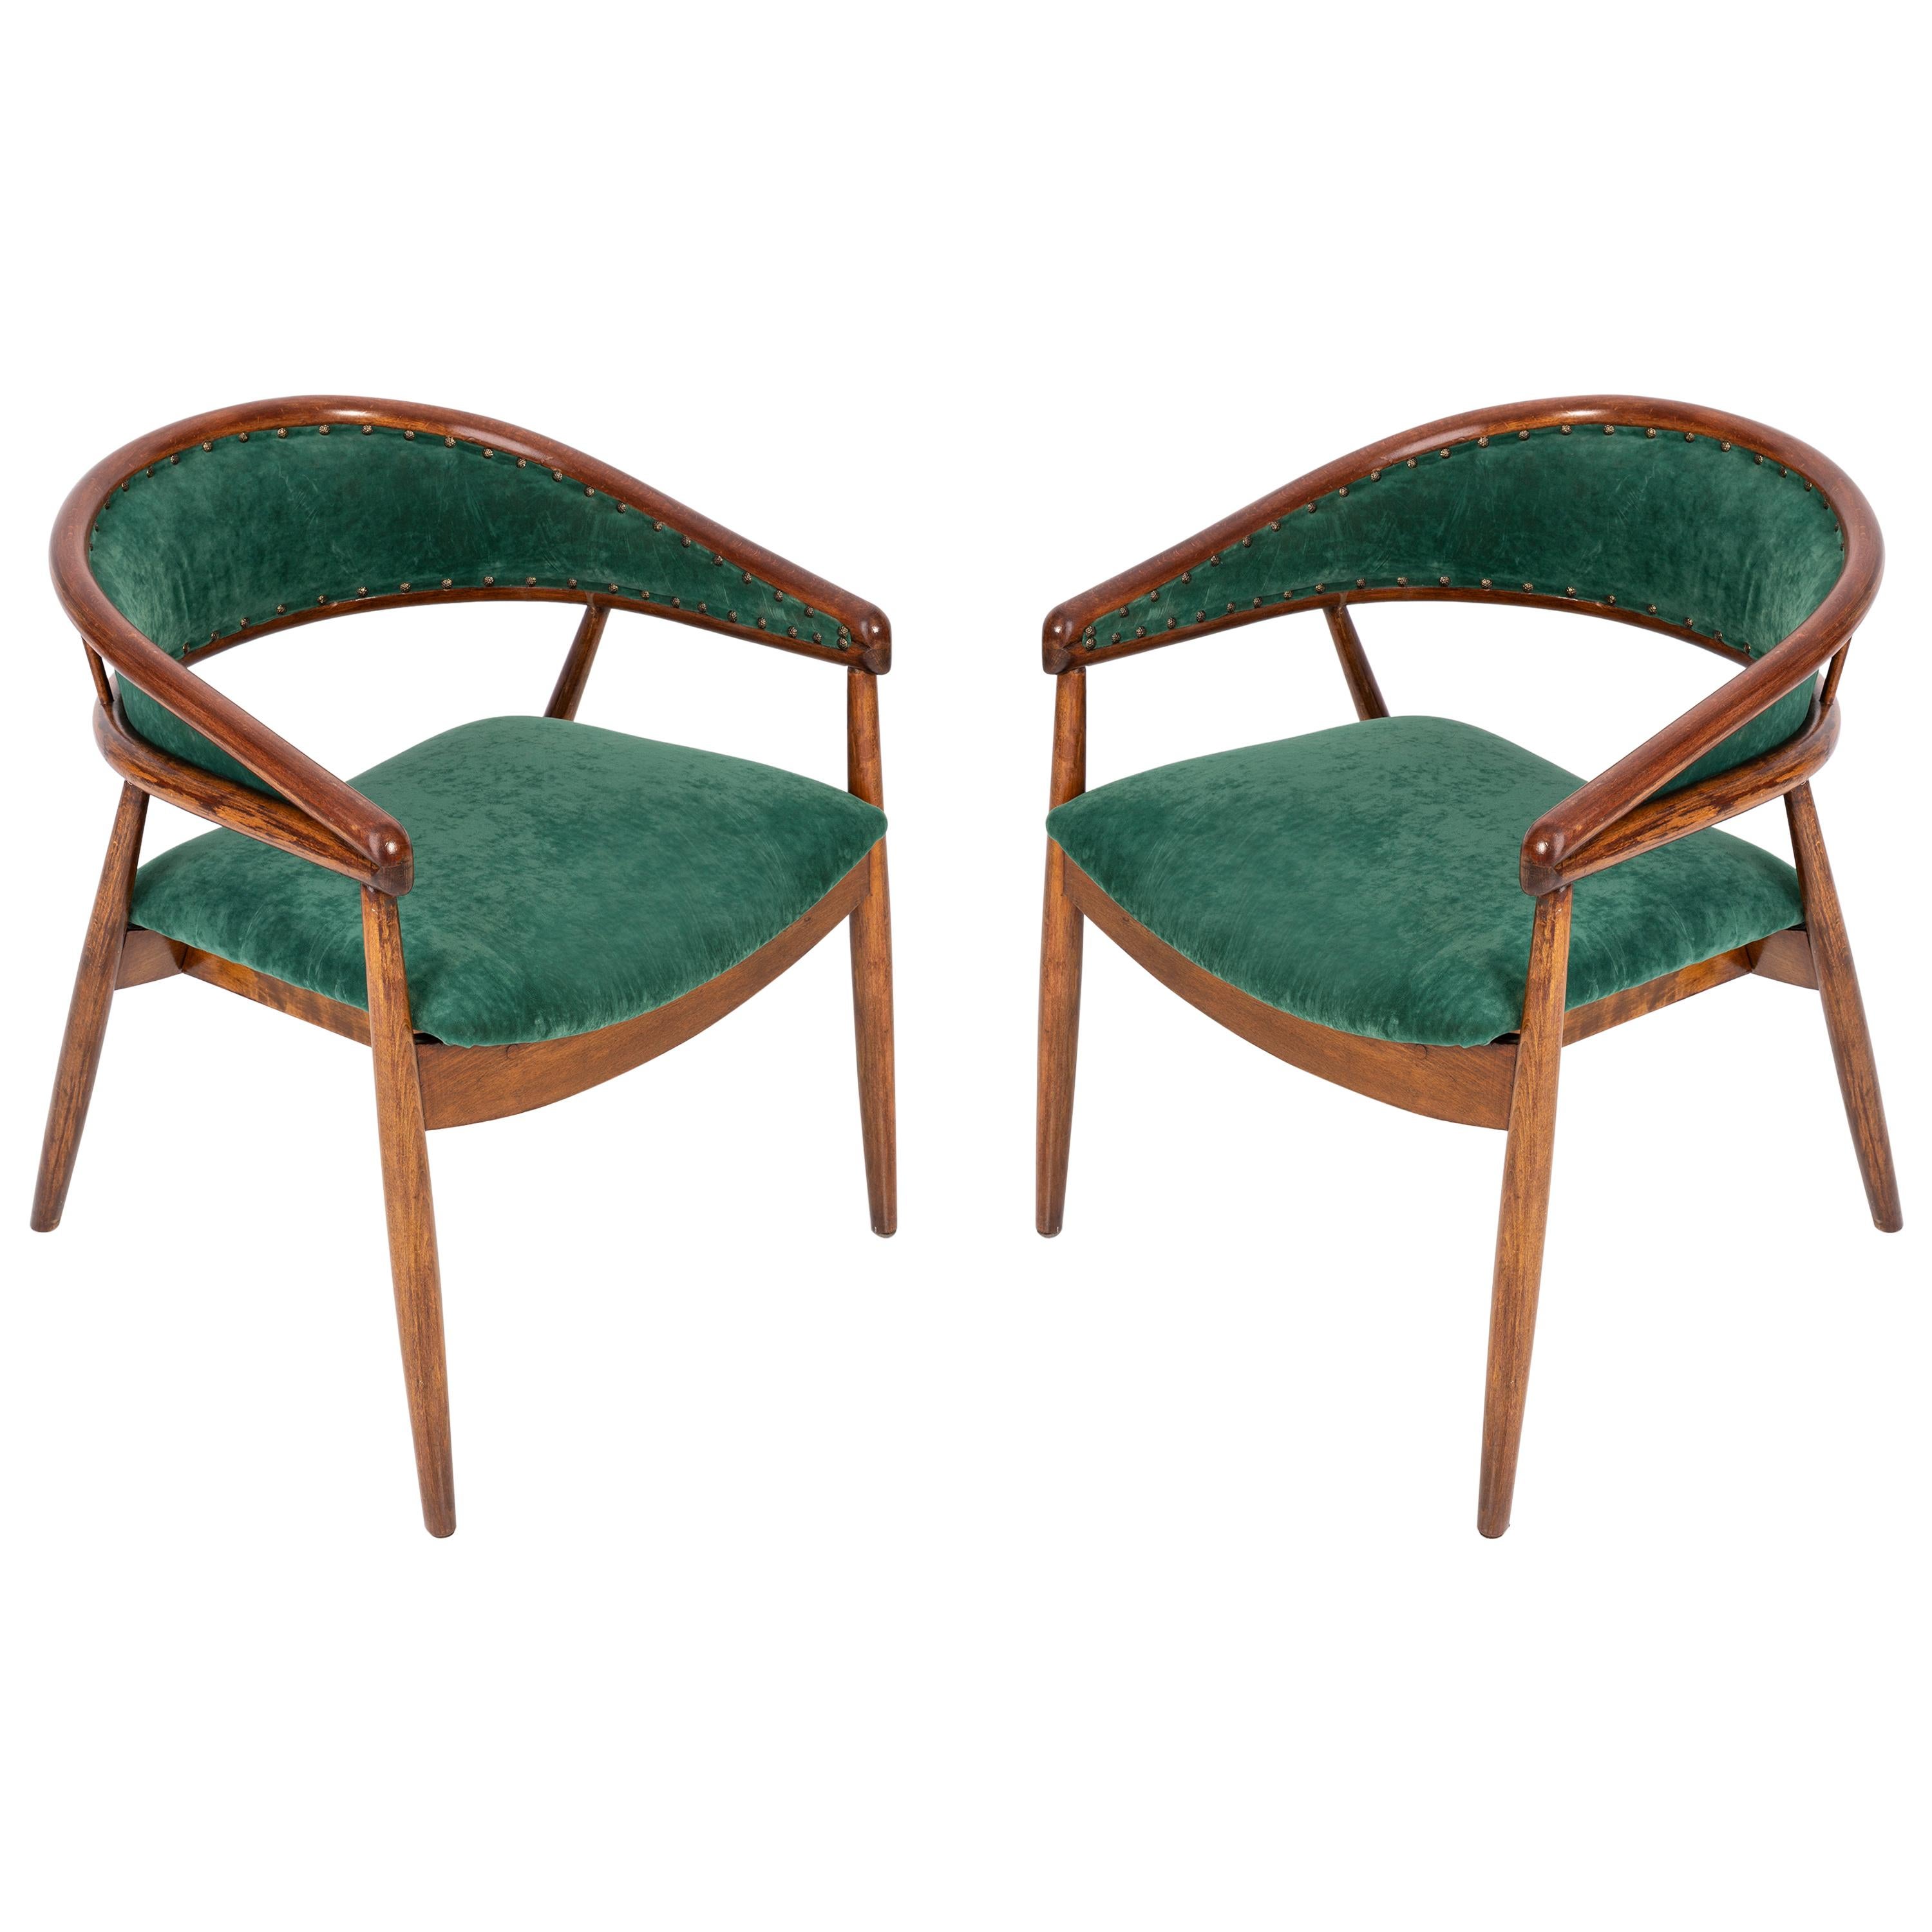 Ensemble de deux fauteuils en hêtre courbé James Mont, vert foncé, type B-3300, années 1960